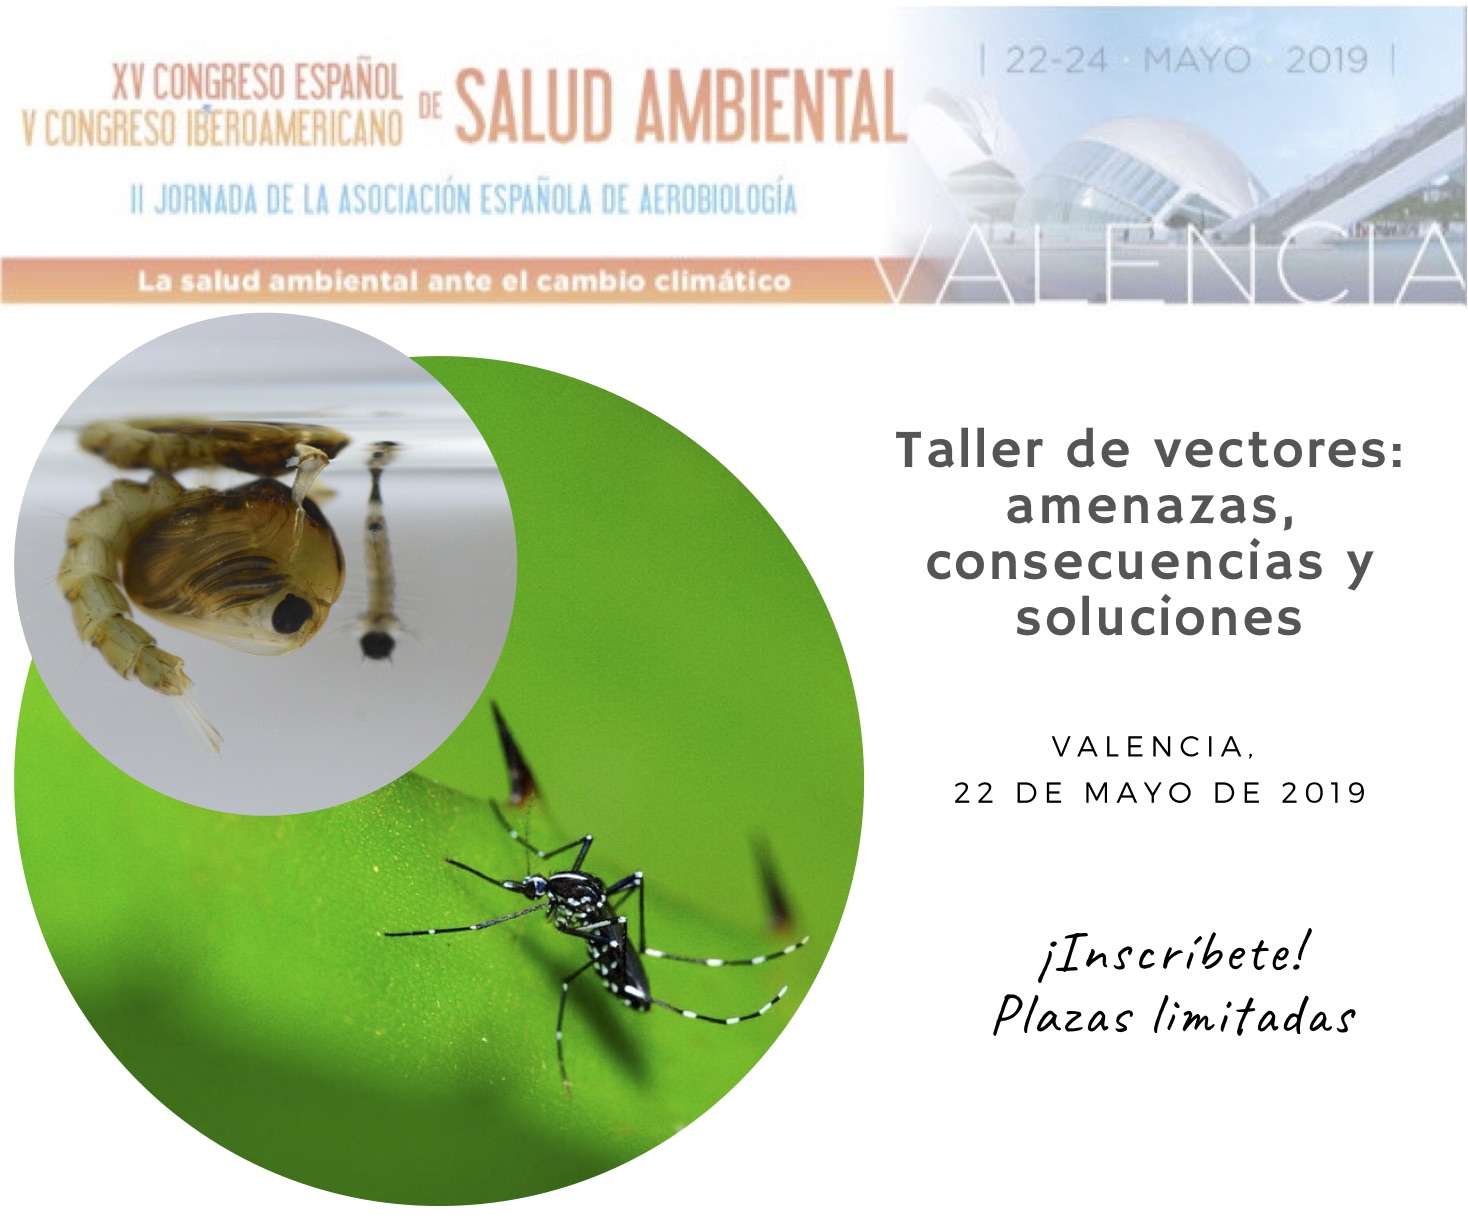 Taller de vectores en el XV Congreso Español y V Iberoamericano de Salud Ambiental